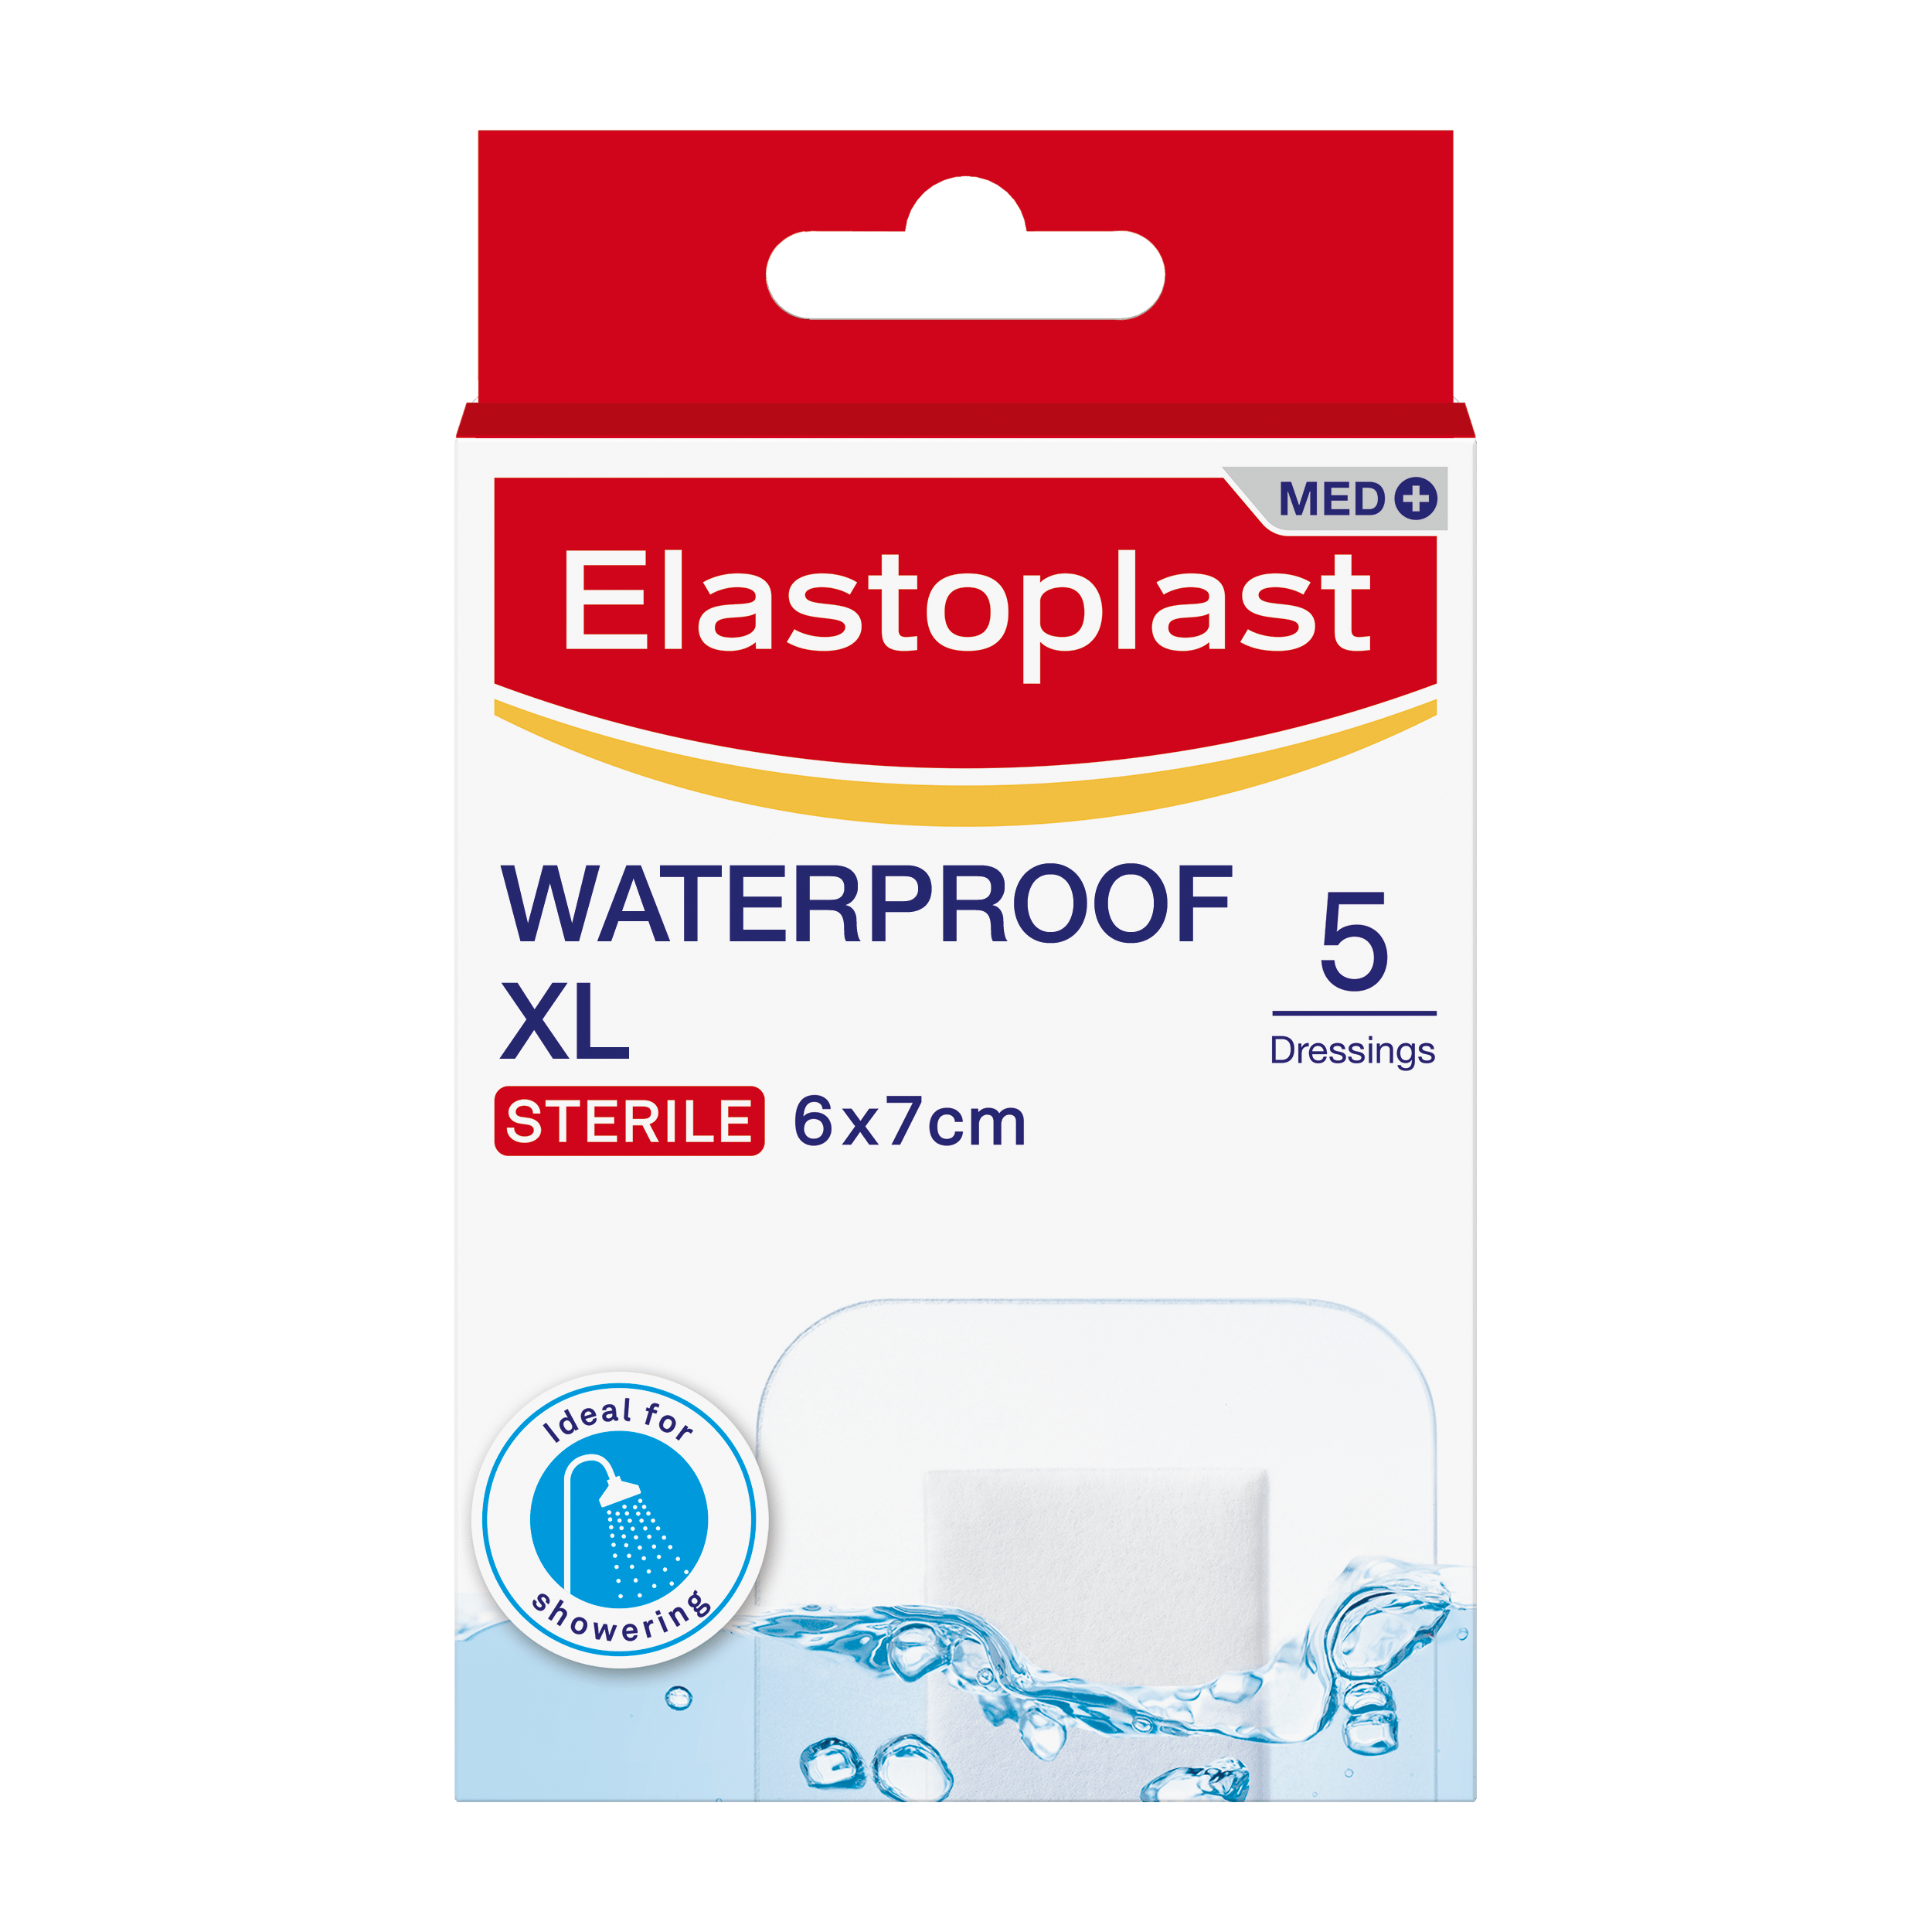 Packshot of Elastoplast Waterproof XL plasters